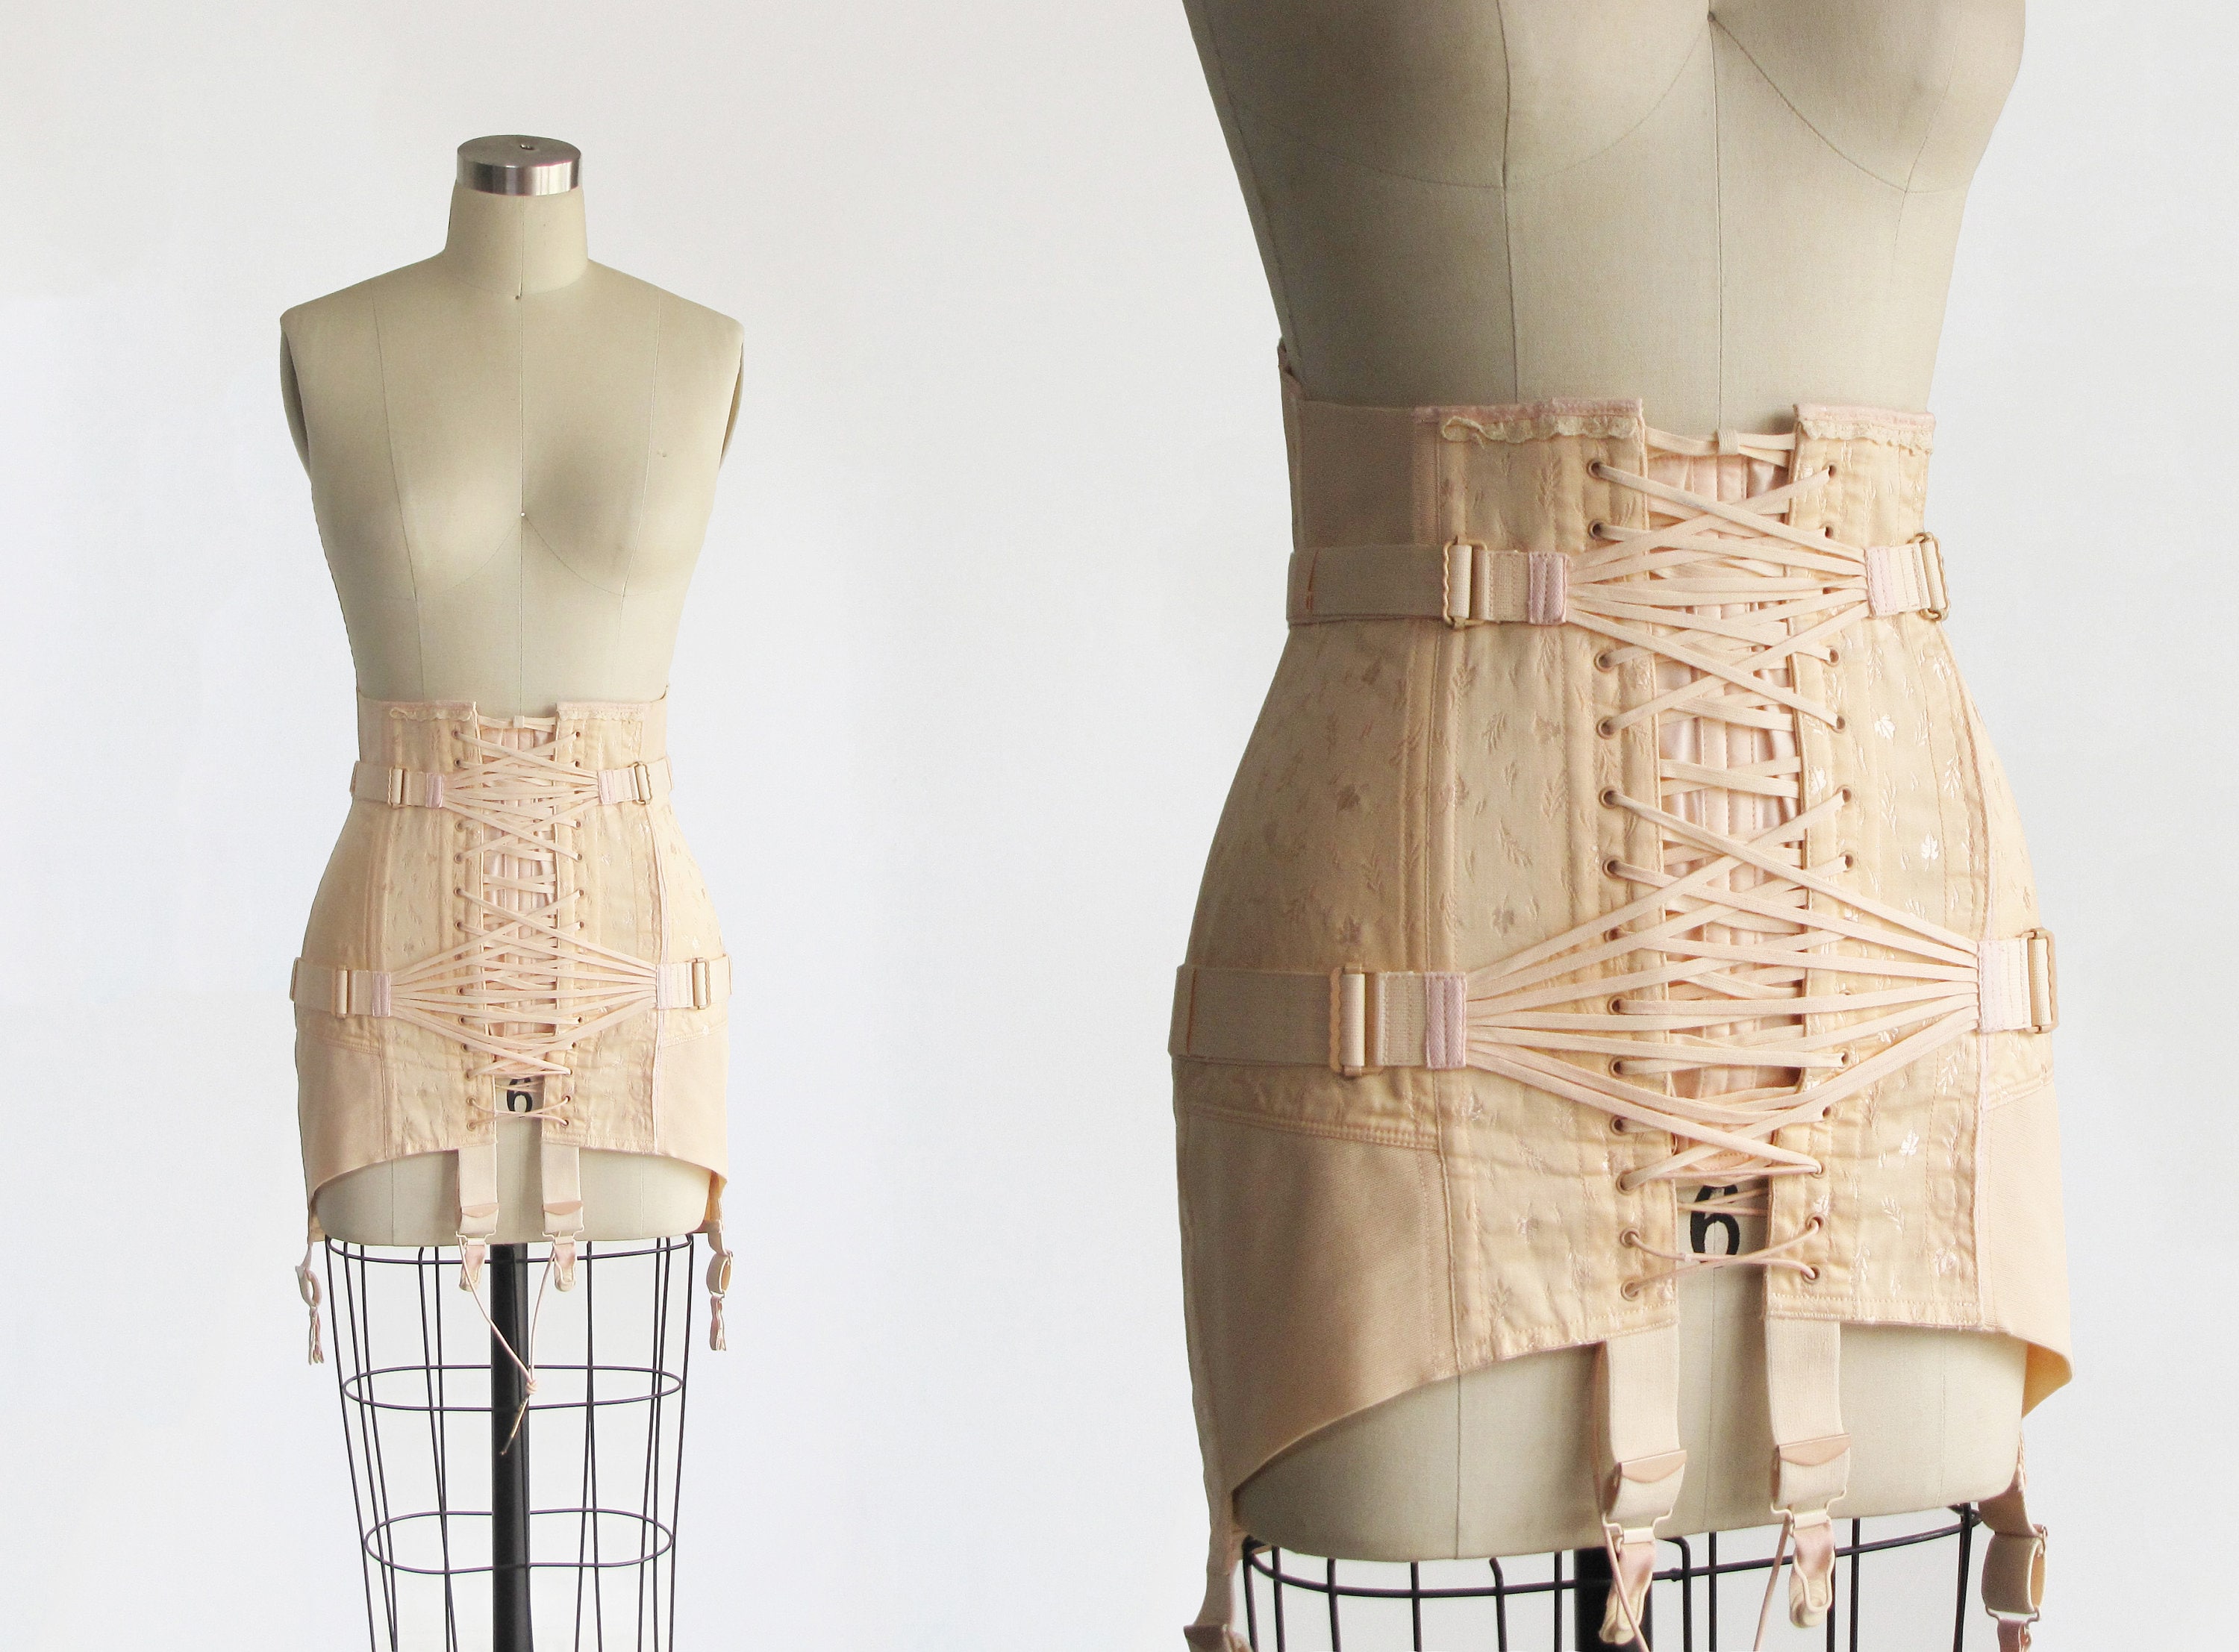 Antique 1940s corset girdle – CARRICKO